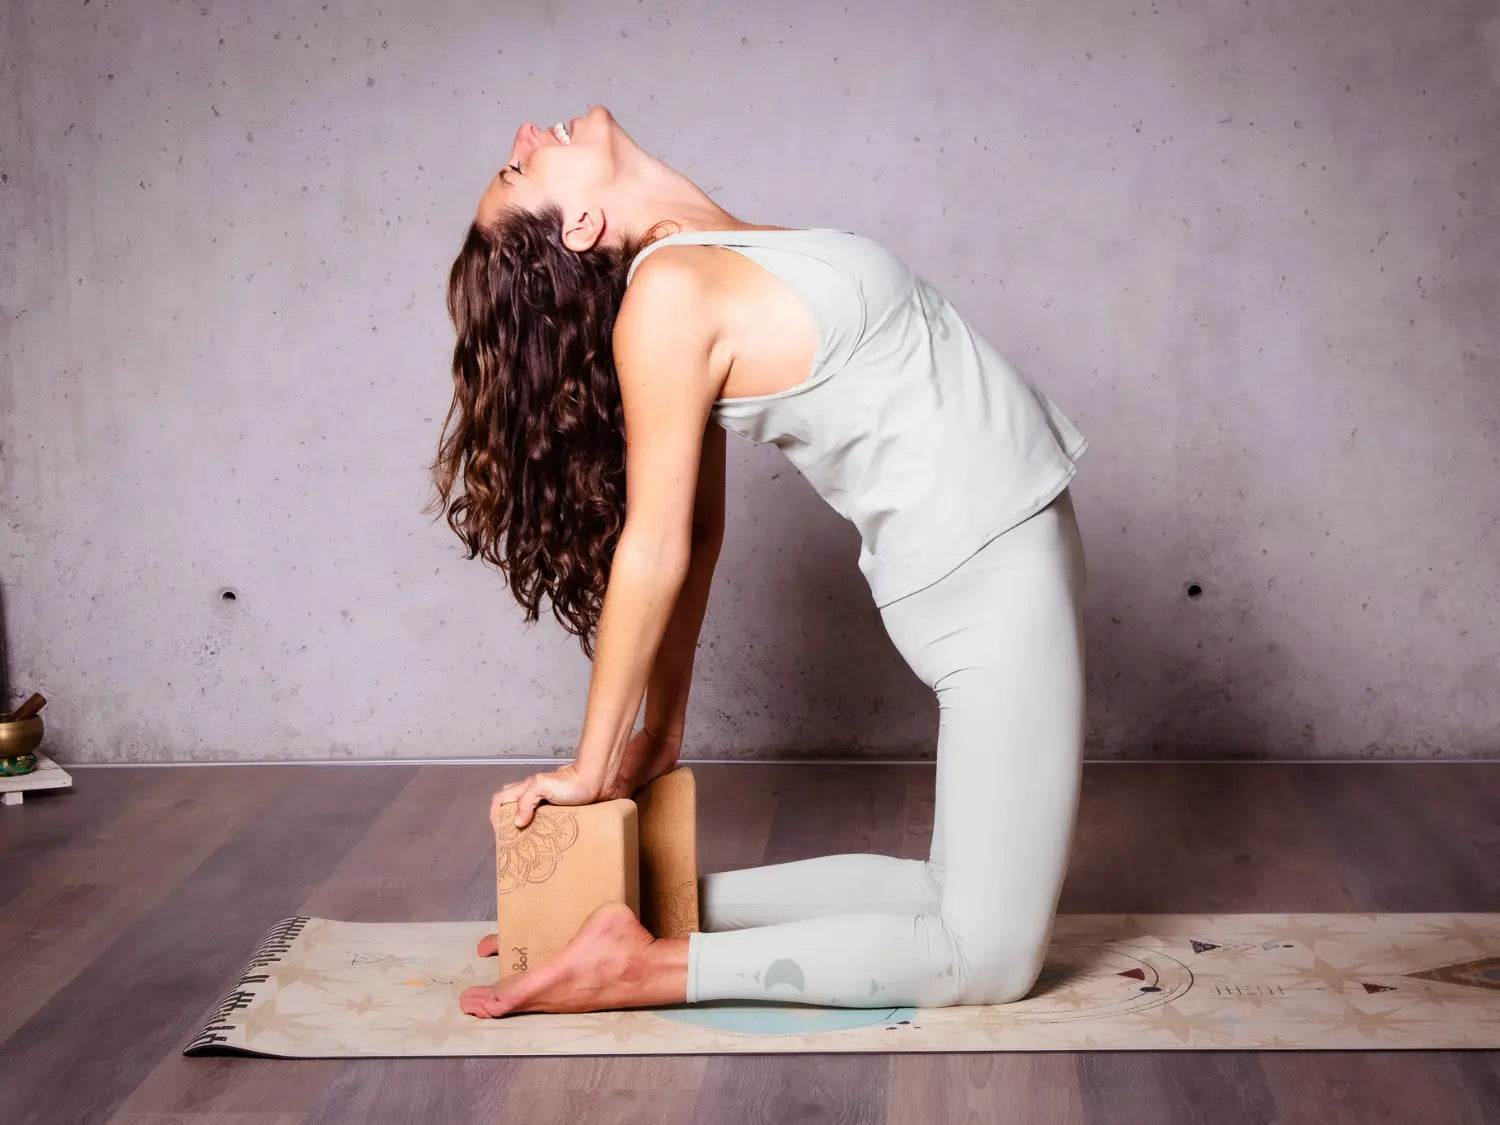 Los materiales de yoga que necesitas para practicar